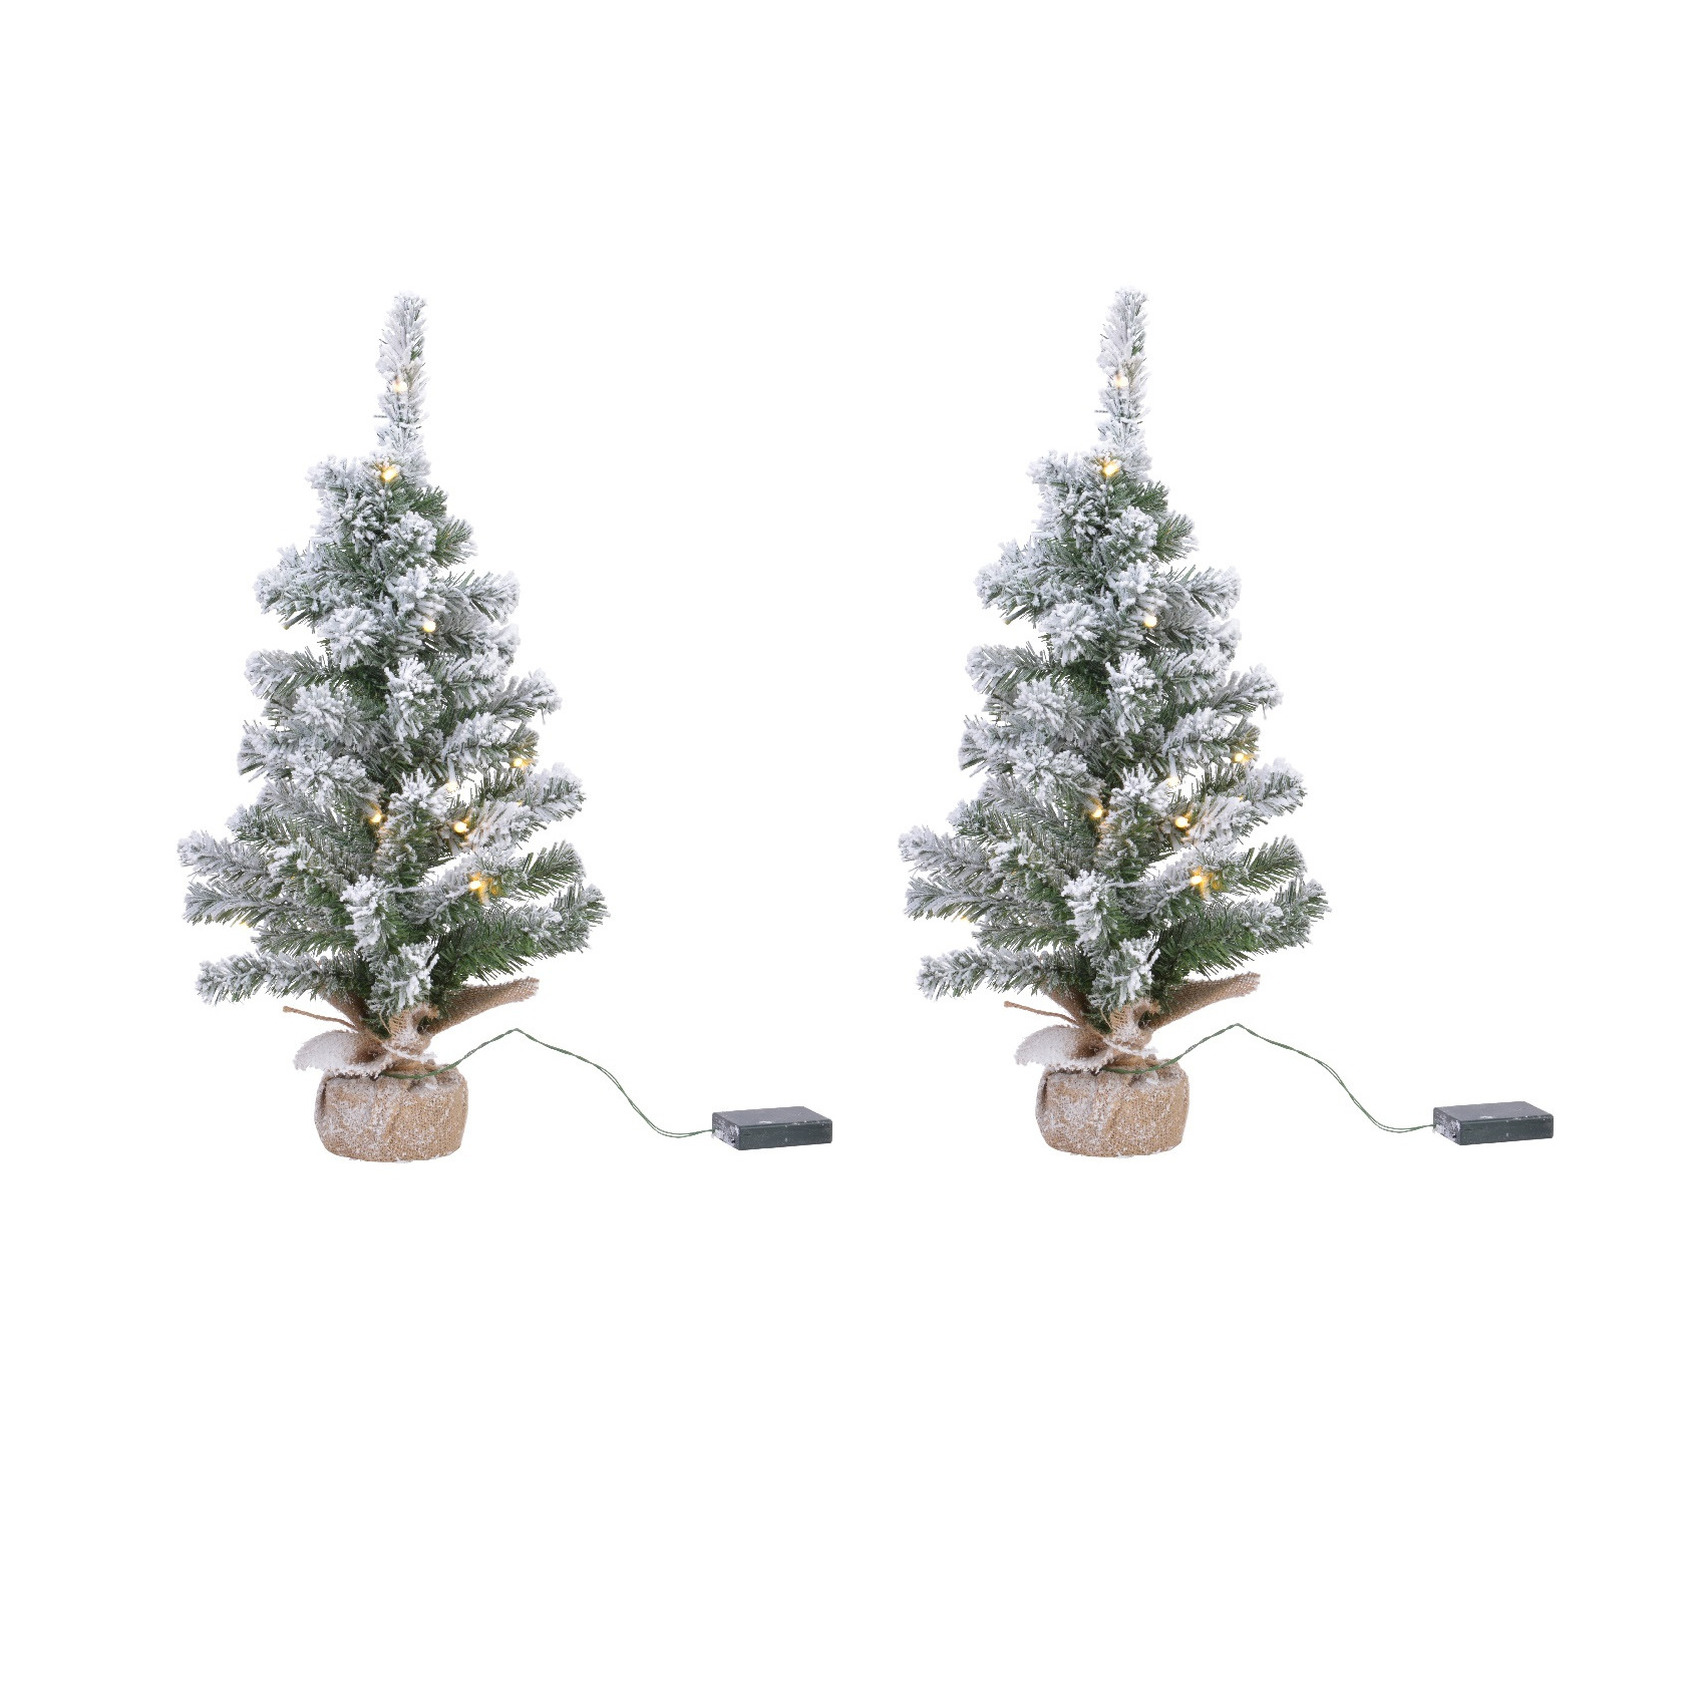 2x stuks kunstboom-kunst kerstboom met sneeuw en licht 60 cm